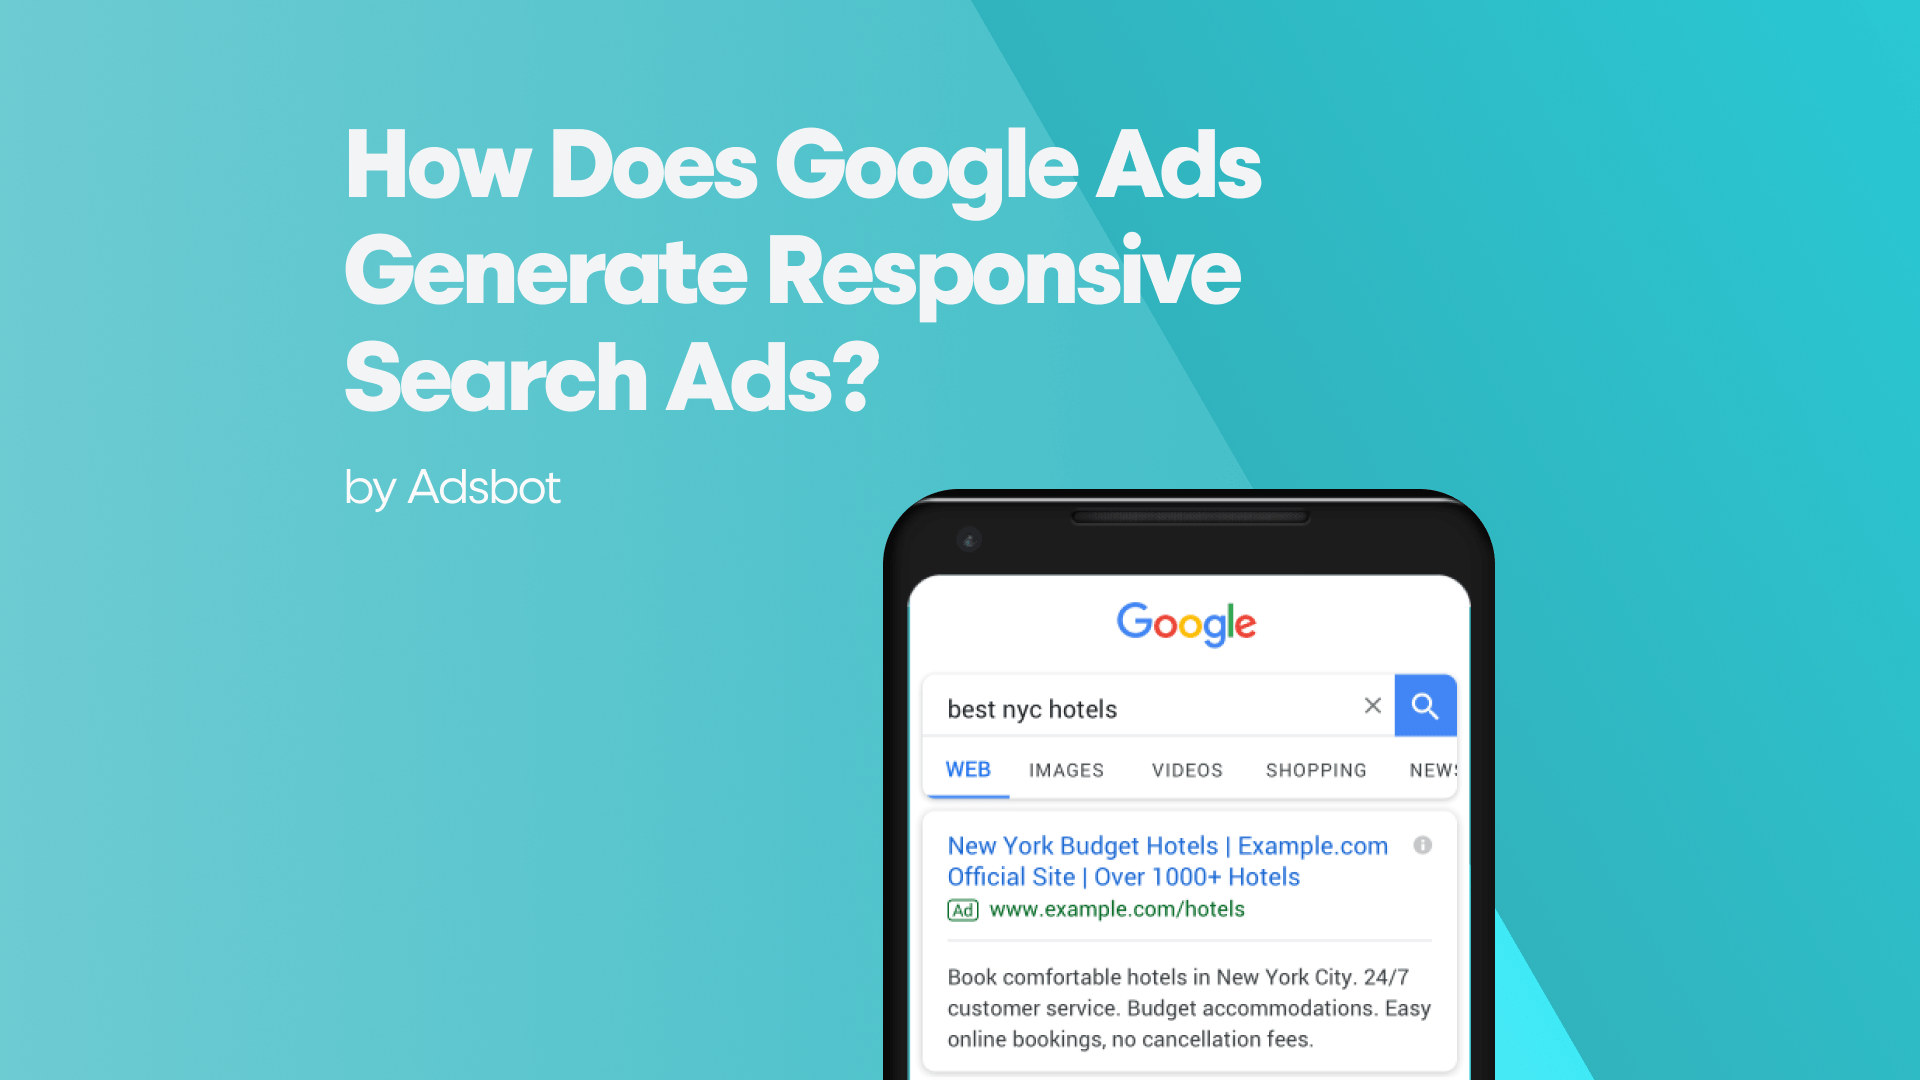 Google Ads Công cụ Quảng cáo Hiệu quả cho Doanh nghiệp của bạn